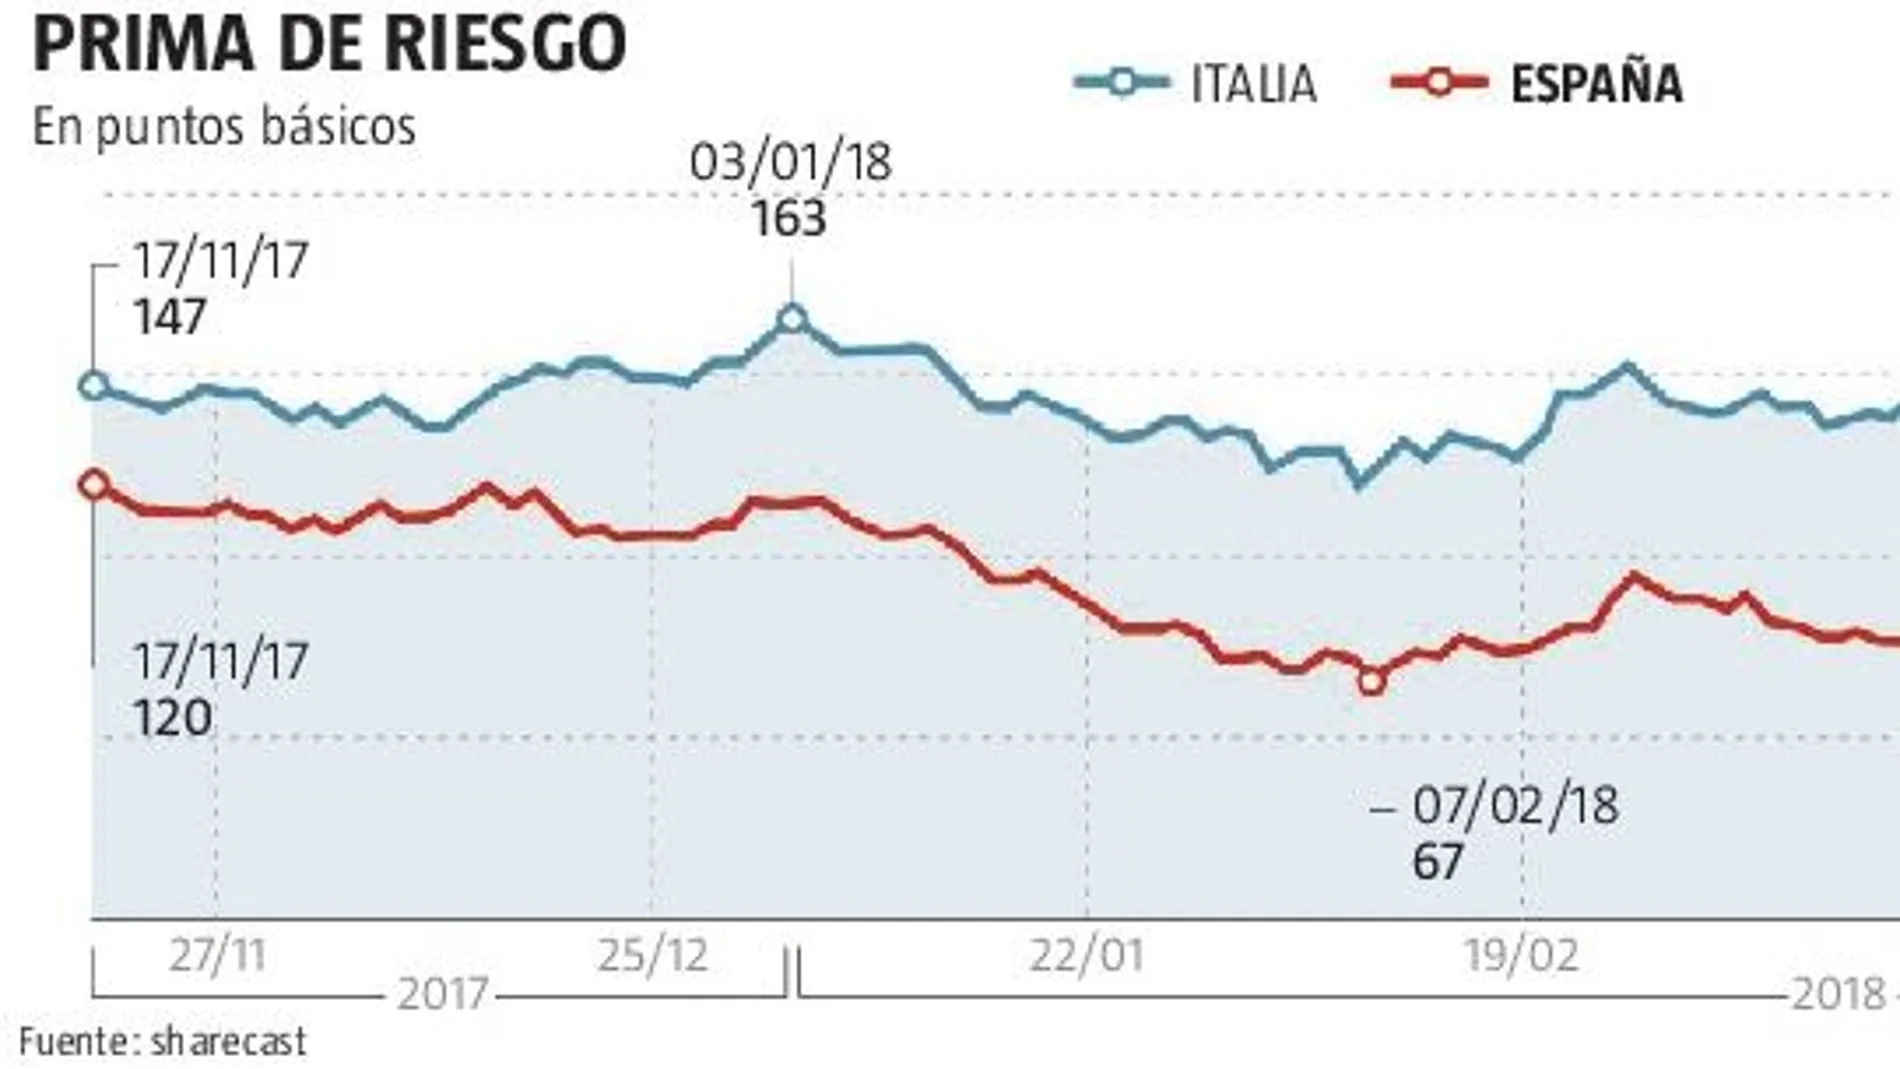 La prima de riesgo italiana casi dobla a la española